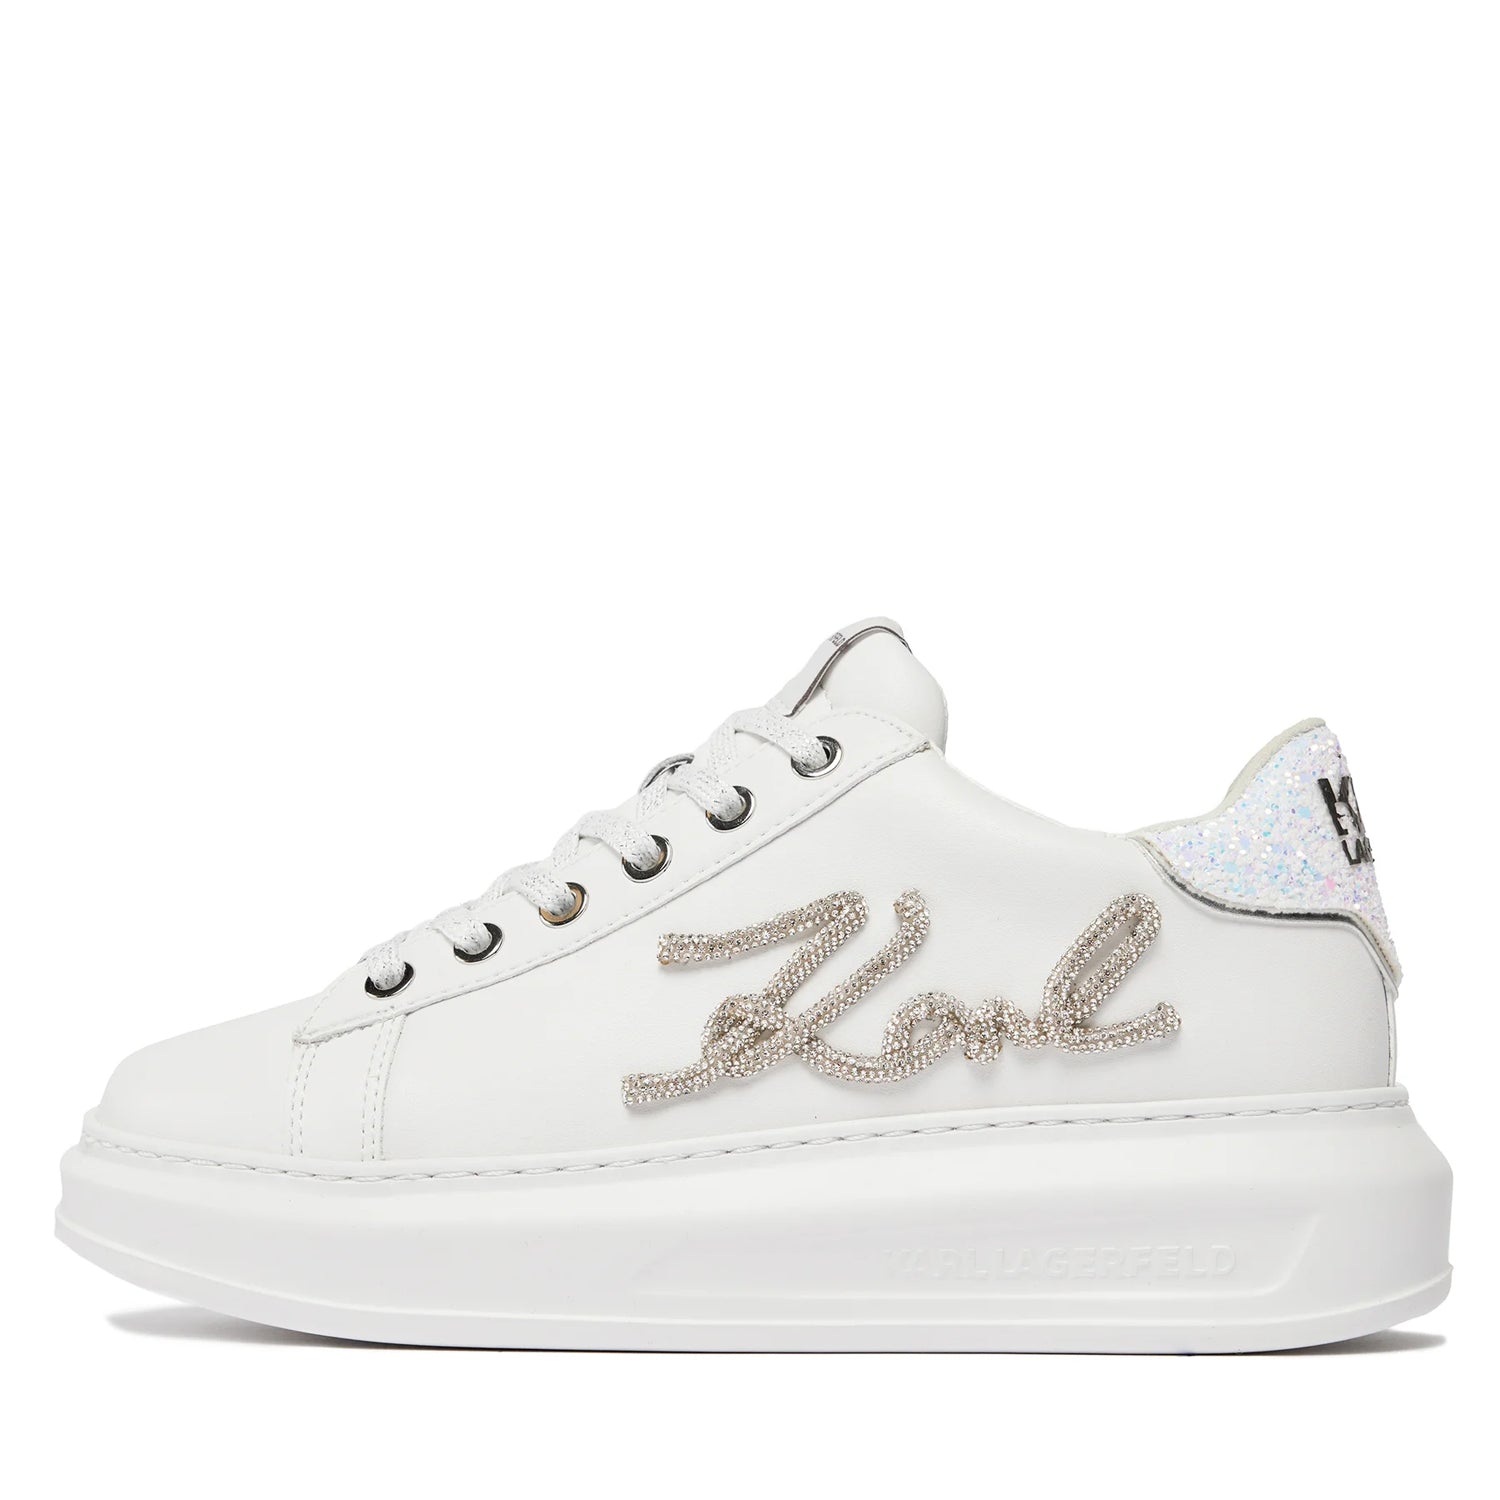 Karl Lagerfeld Sapatilhas Sneakers Shoes Kl62510g Whi Silver Branco Prateado_shot5